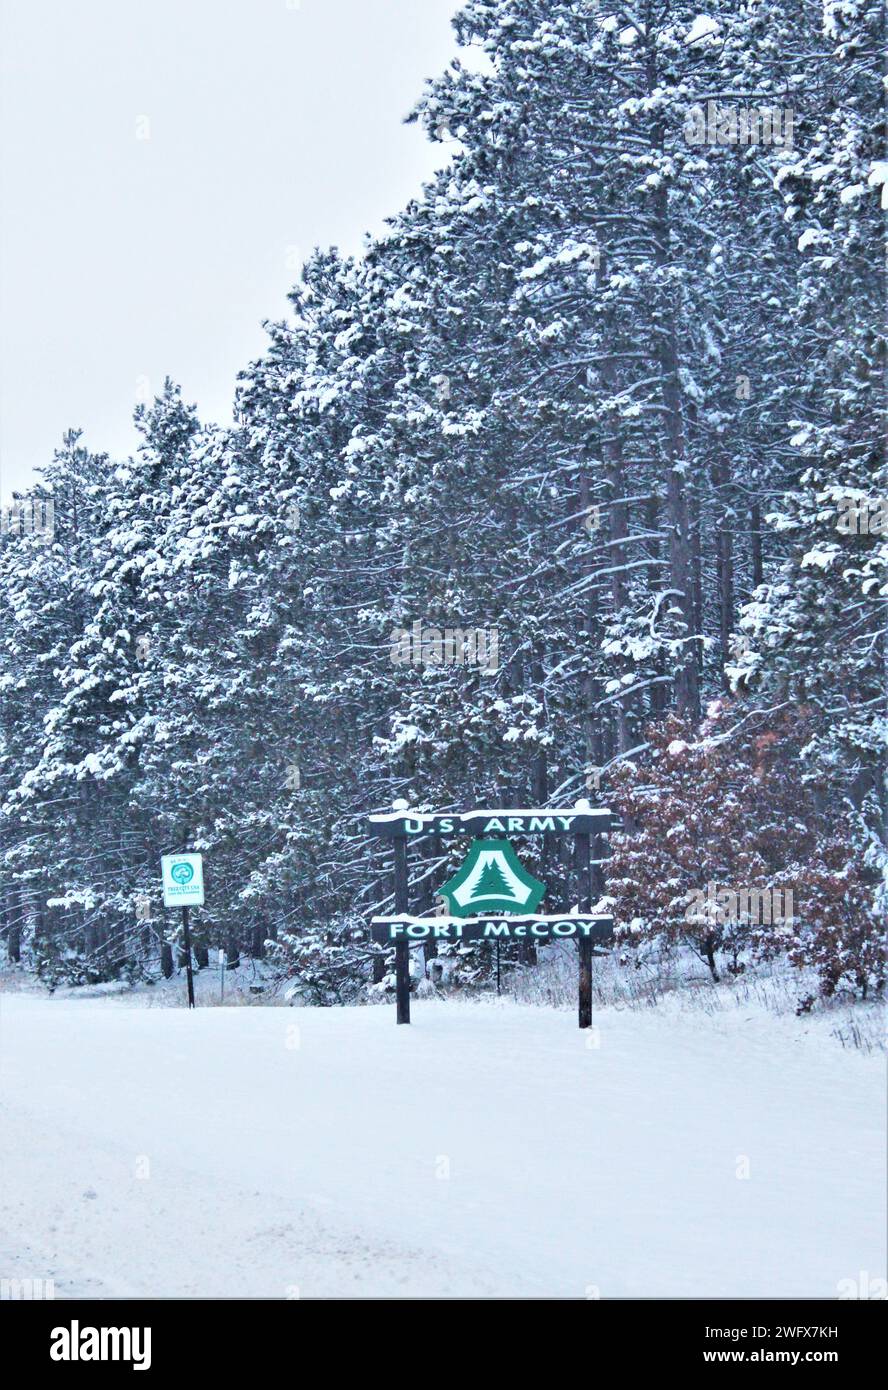 Un des panneaux d'installation est représenté couvert de neige le 11 janvier 2024, à fort McCoy, Wisconsin. Entre le 9 et le 13 janvier 2024, à fort McCoy, l'installation a reçu plus de 18 pouces de neige sur cette travée, plus la chute de neige a été suivie de températures inférieures à zéro. Le temps enneigé a également entraîné une dotation minimale en personnel pour l'installation les 9 et 12 janvier, les conditions de conduite dans les régions locales étant considérées comme moins favorables. Banque D'Images